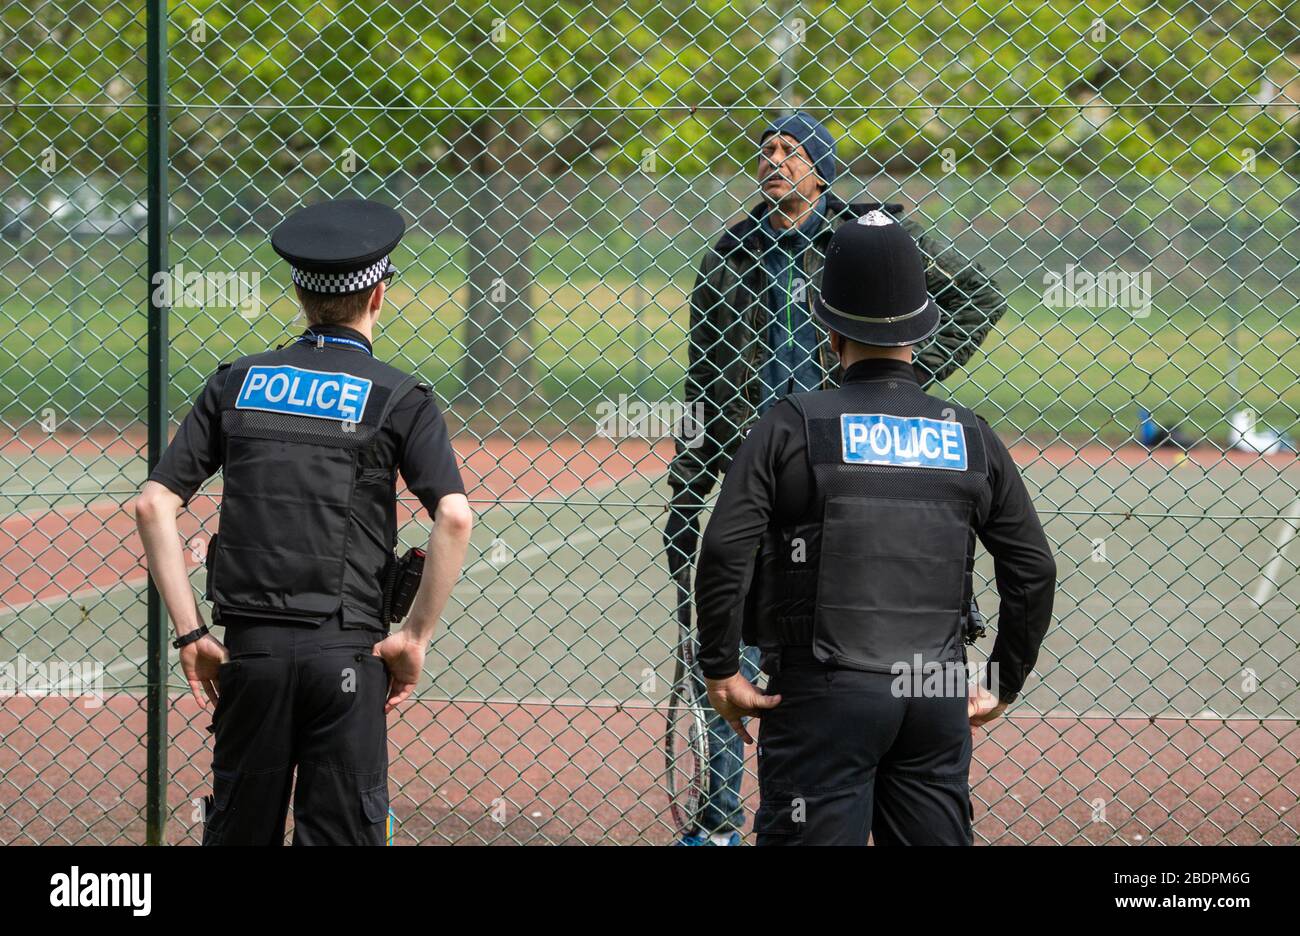 Gli ufficiali di polizia parlano con un uomo che gioca a tennis a Northampton, come la polizia Northants annuncia che stanno rinforzando le loro forze di allontanamento sociale, mentre il Regno Unito continua a bloccarsi per contribuire a frenare la diffusione di Covid-19. Foto Stock